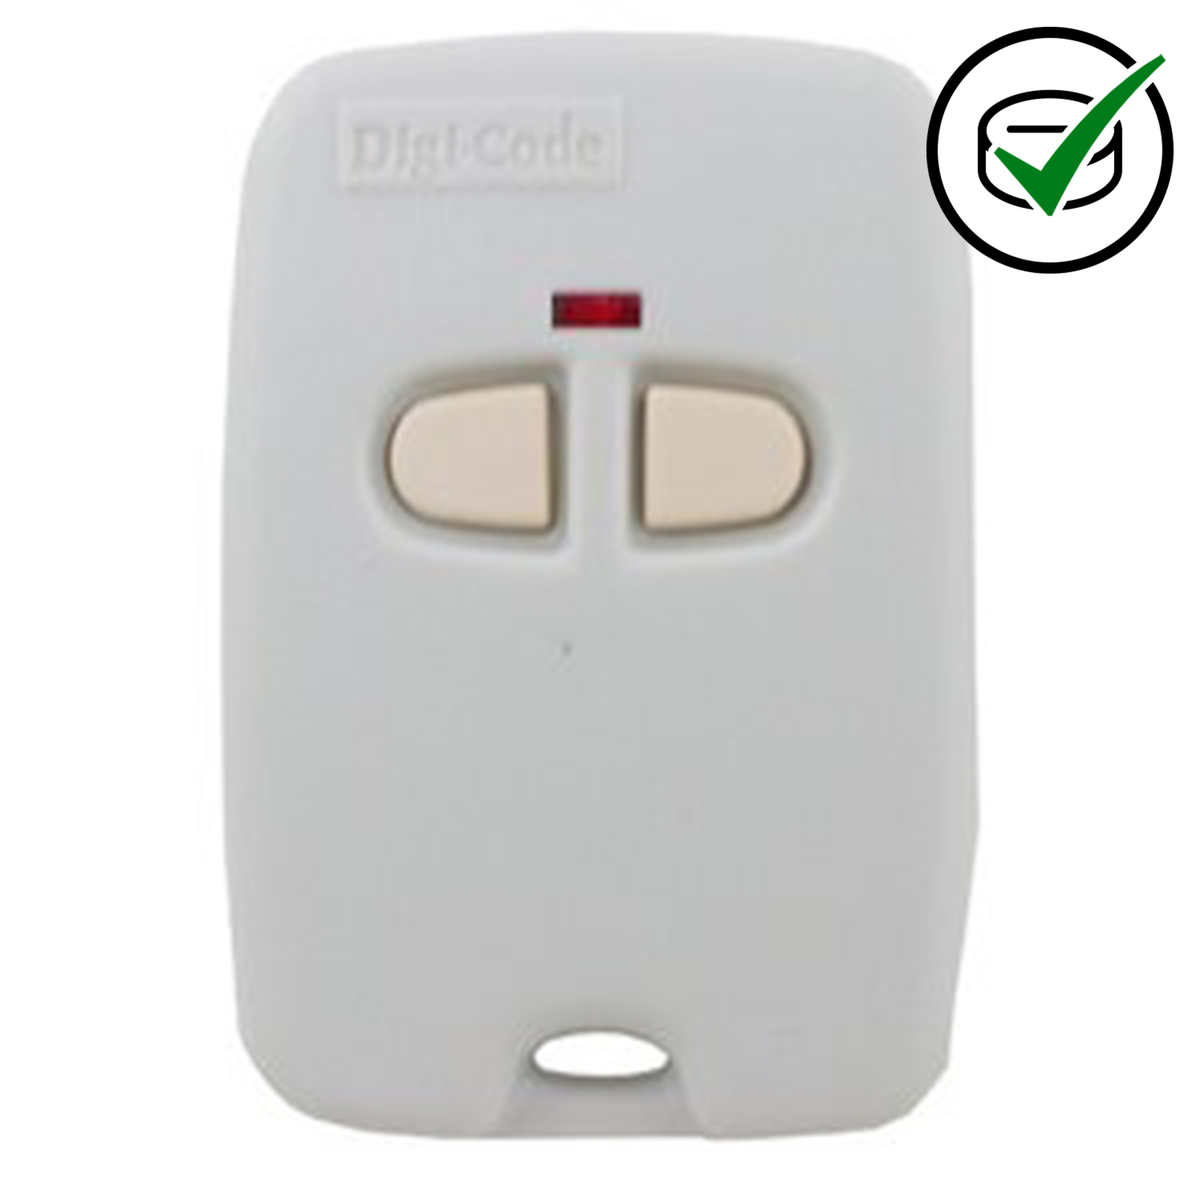 Genuine Digicode 2 button remote handset 300MHz